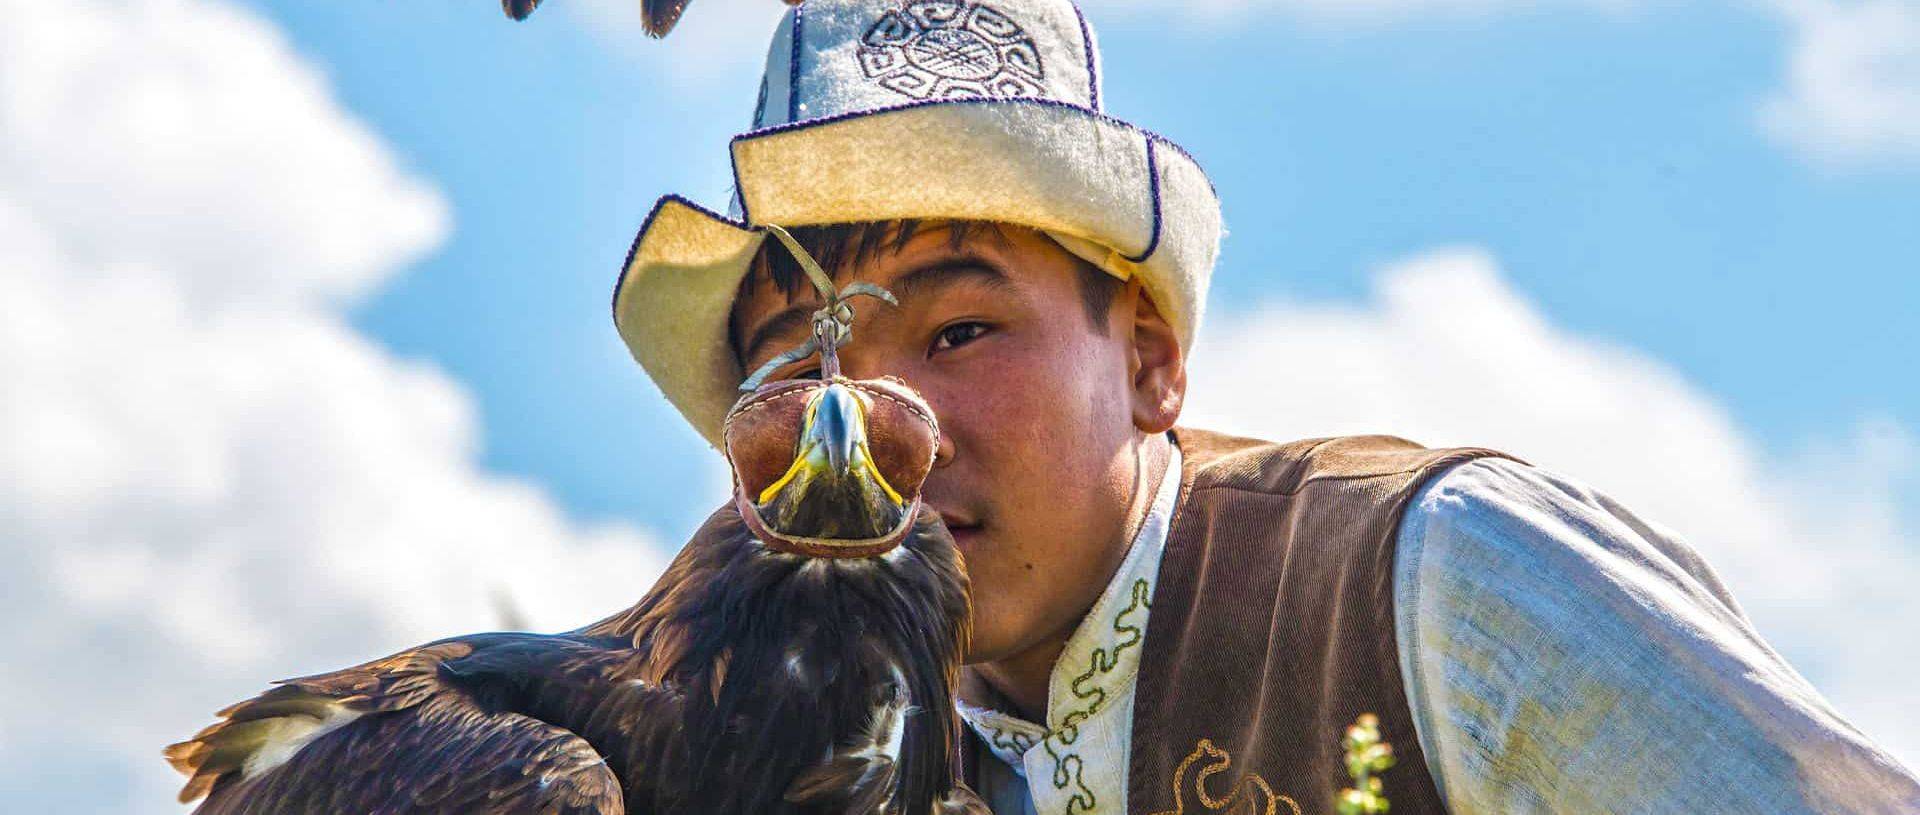 Eagle show, Kyrgyzstan